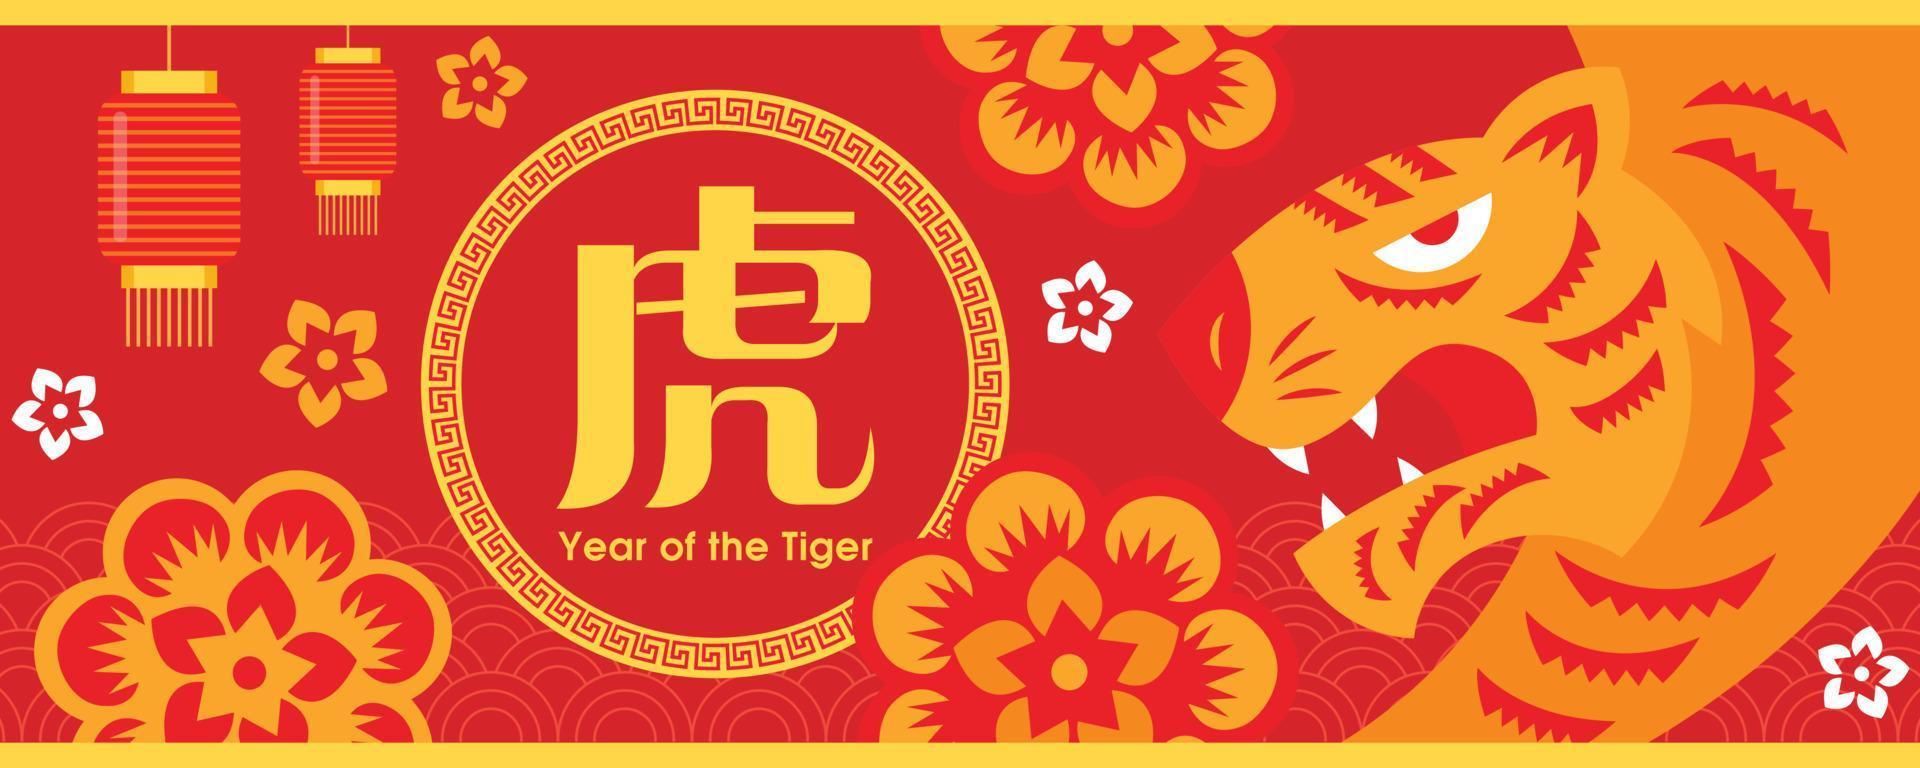 kinesiskt nyår 2022. år för tigertecknet emblem. pappersklipp av tiger garphic symbol och orientaliska blommor ornament på gratulationskort banner vektor